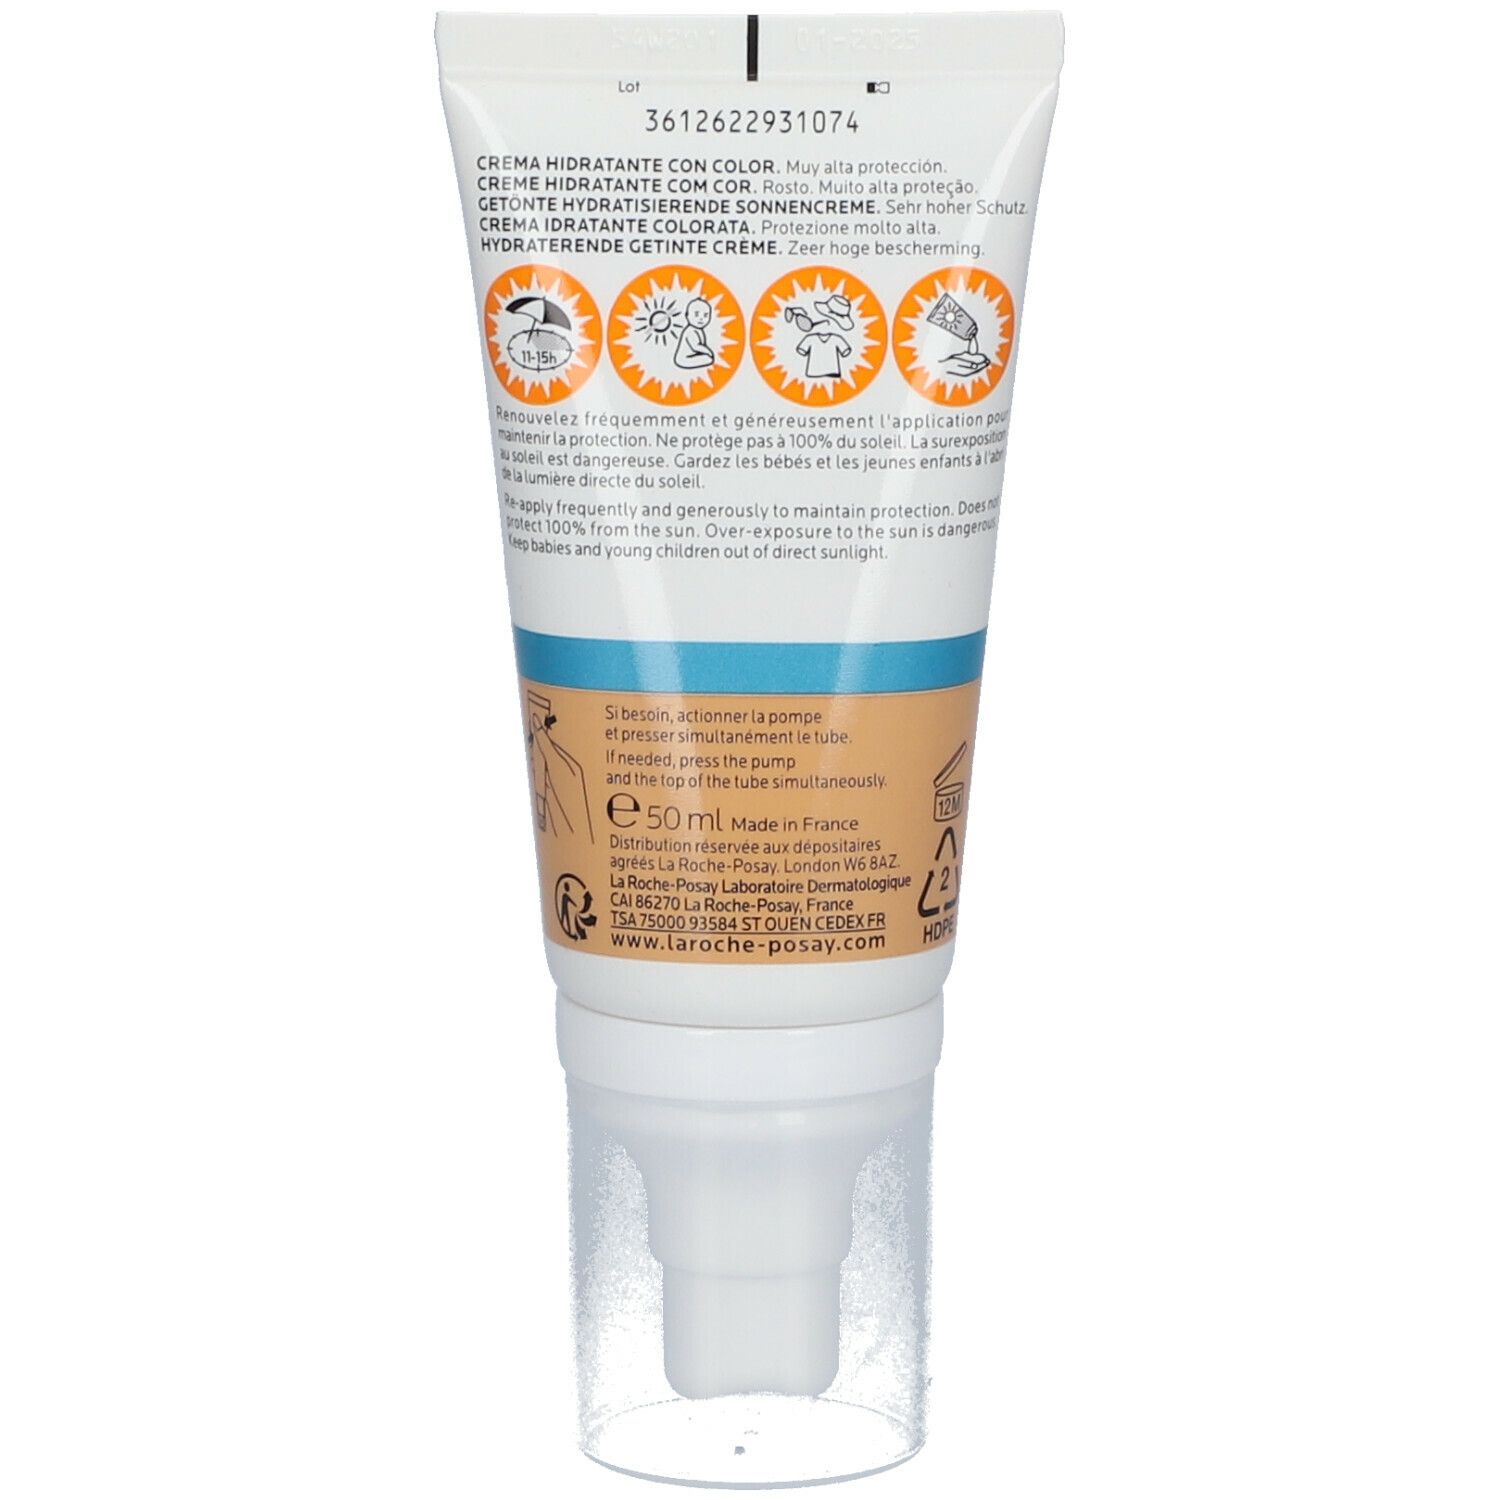 La Roche-Posay Anthelios UVMune 400 Crema Idratante colorata che offre protezione estrema da UVA Ultra Lunghi SPF50+ 50 ml